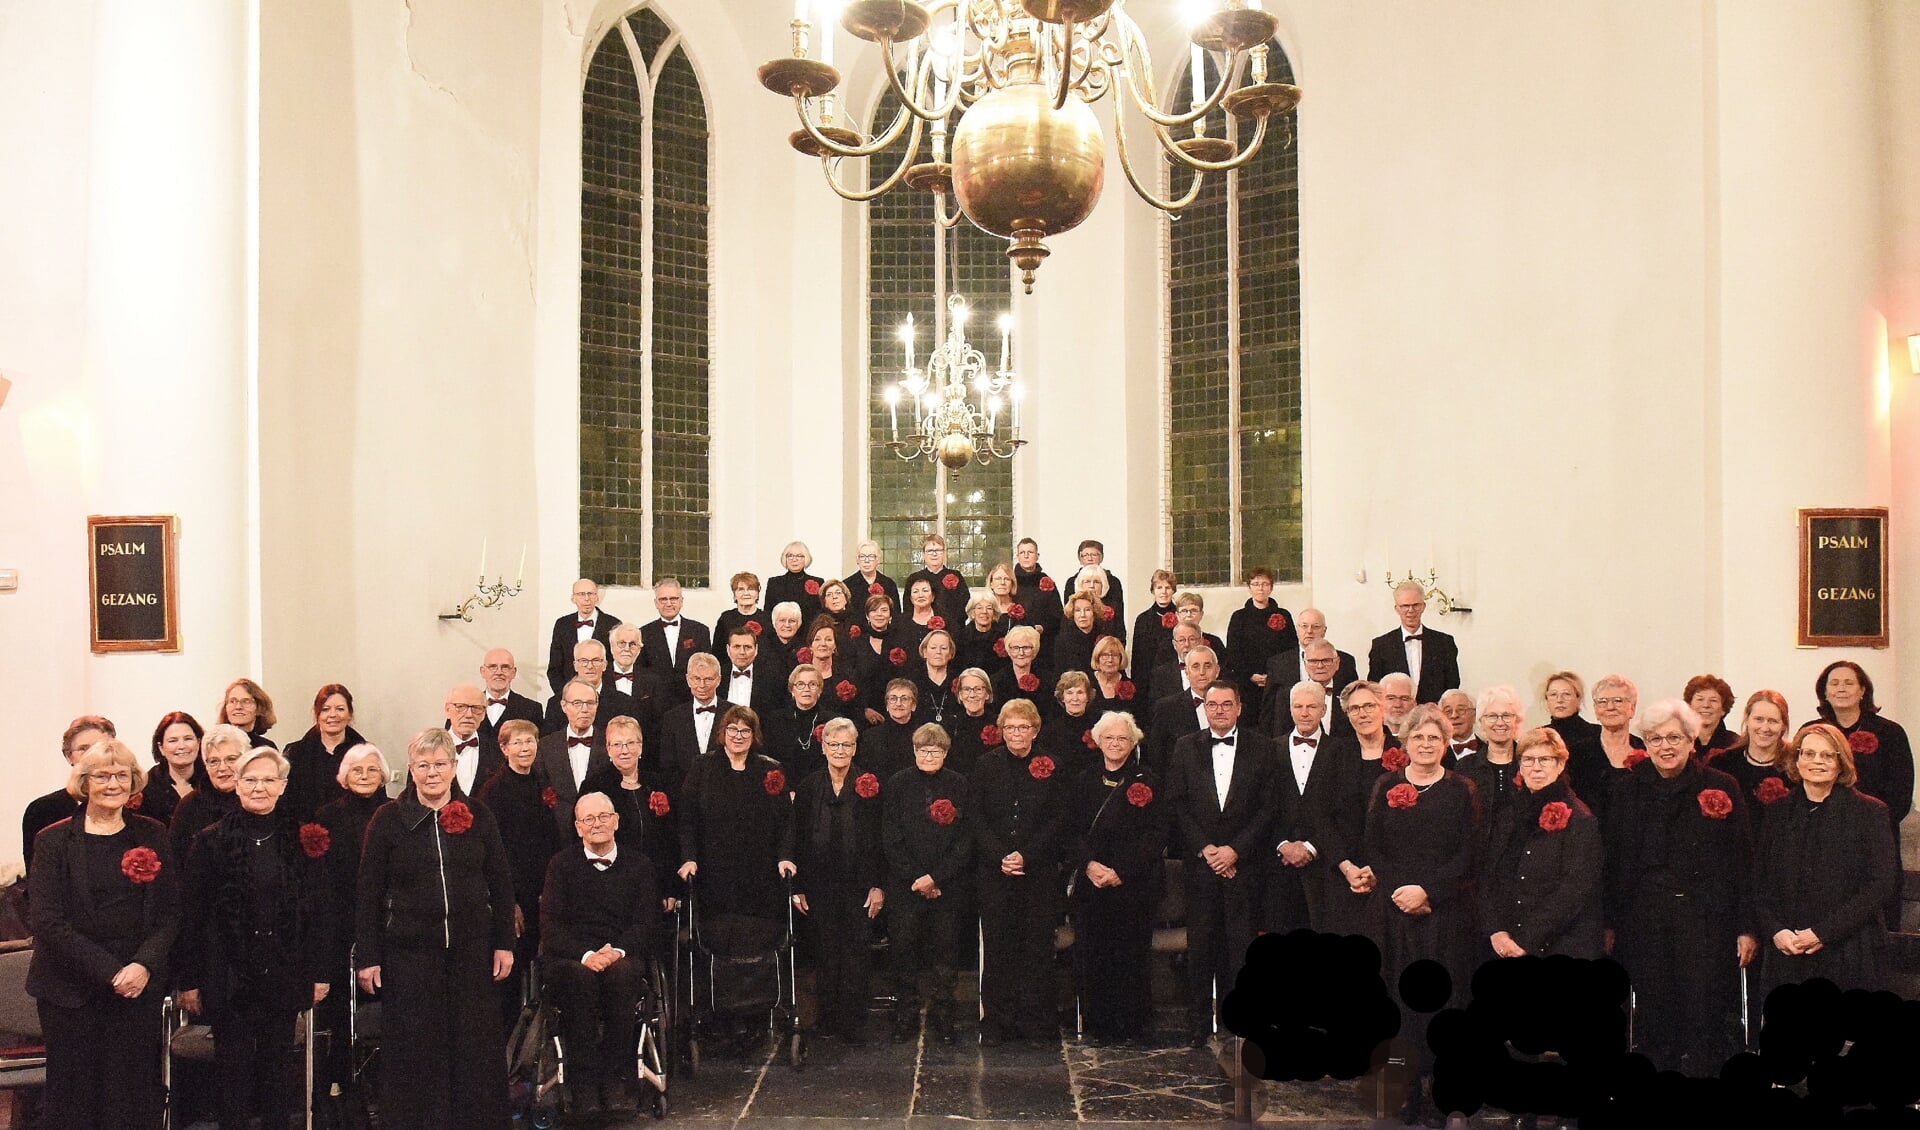 Het Vlaardings koor Gloria Toonkunst zorgt met de uitvoering van het passieconcert voor een avond met ontroerende muziek.